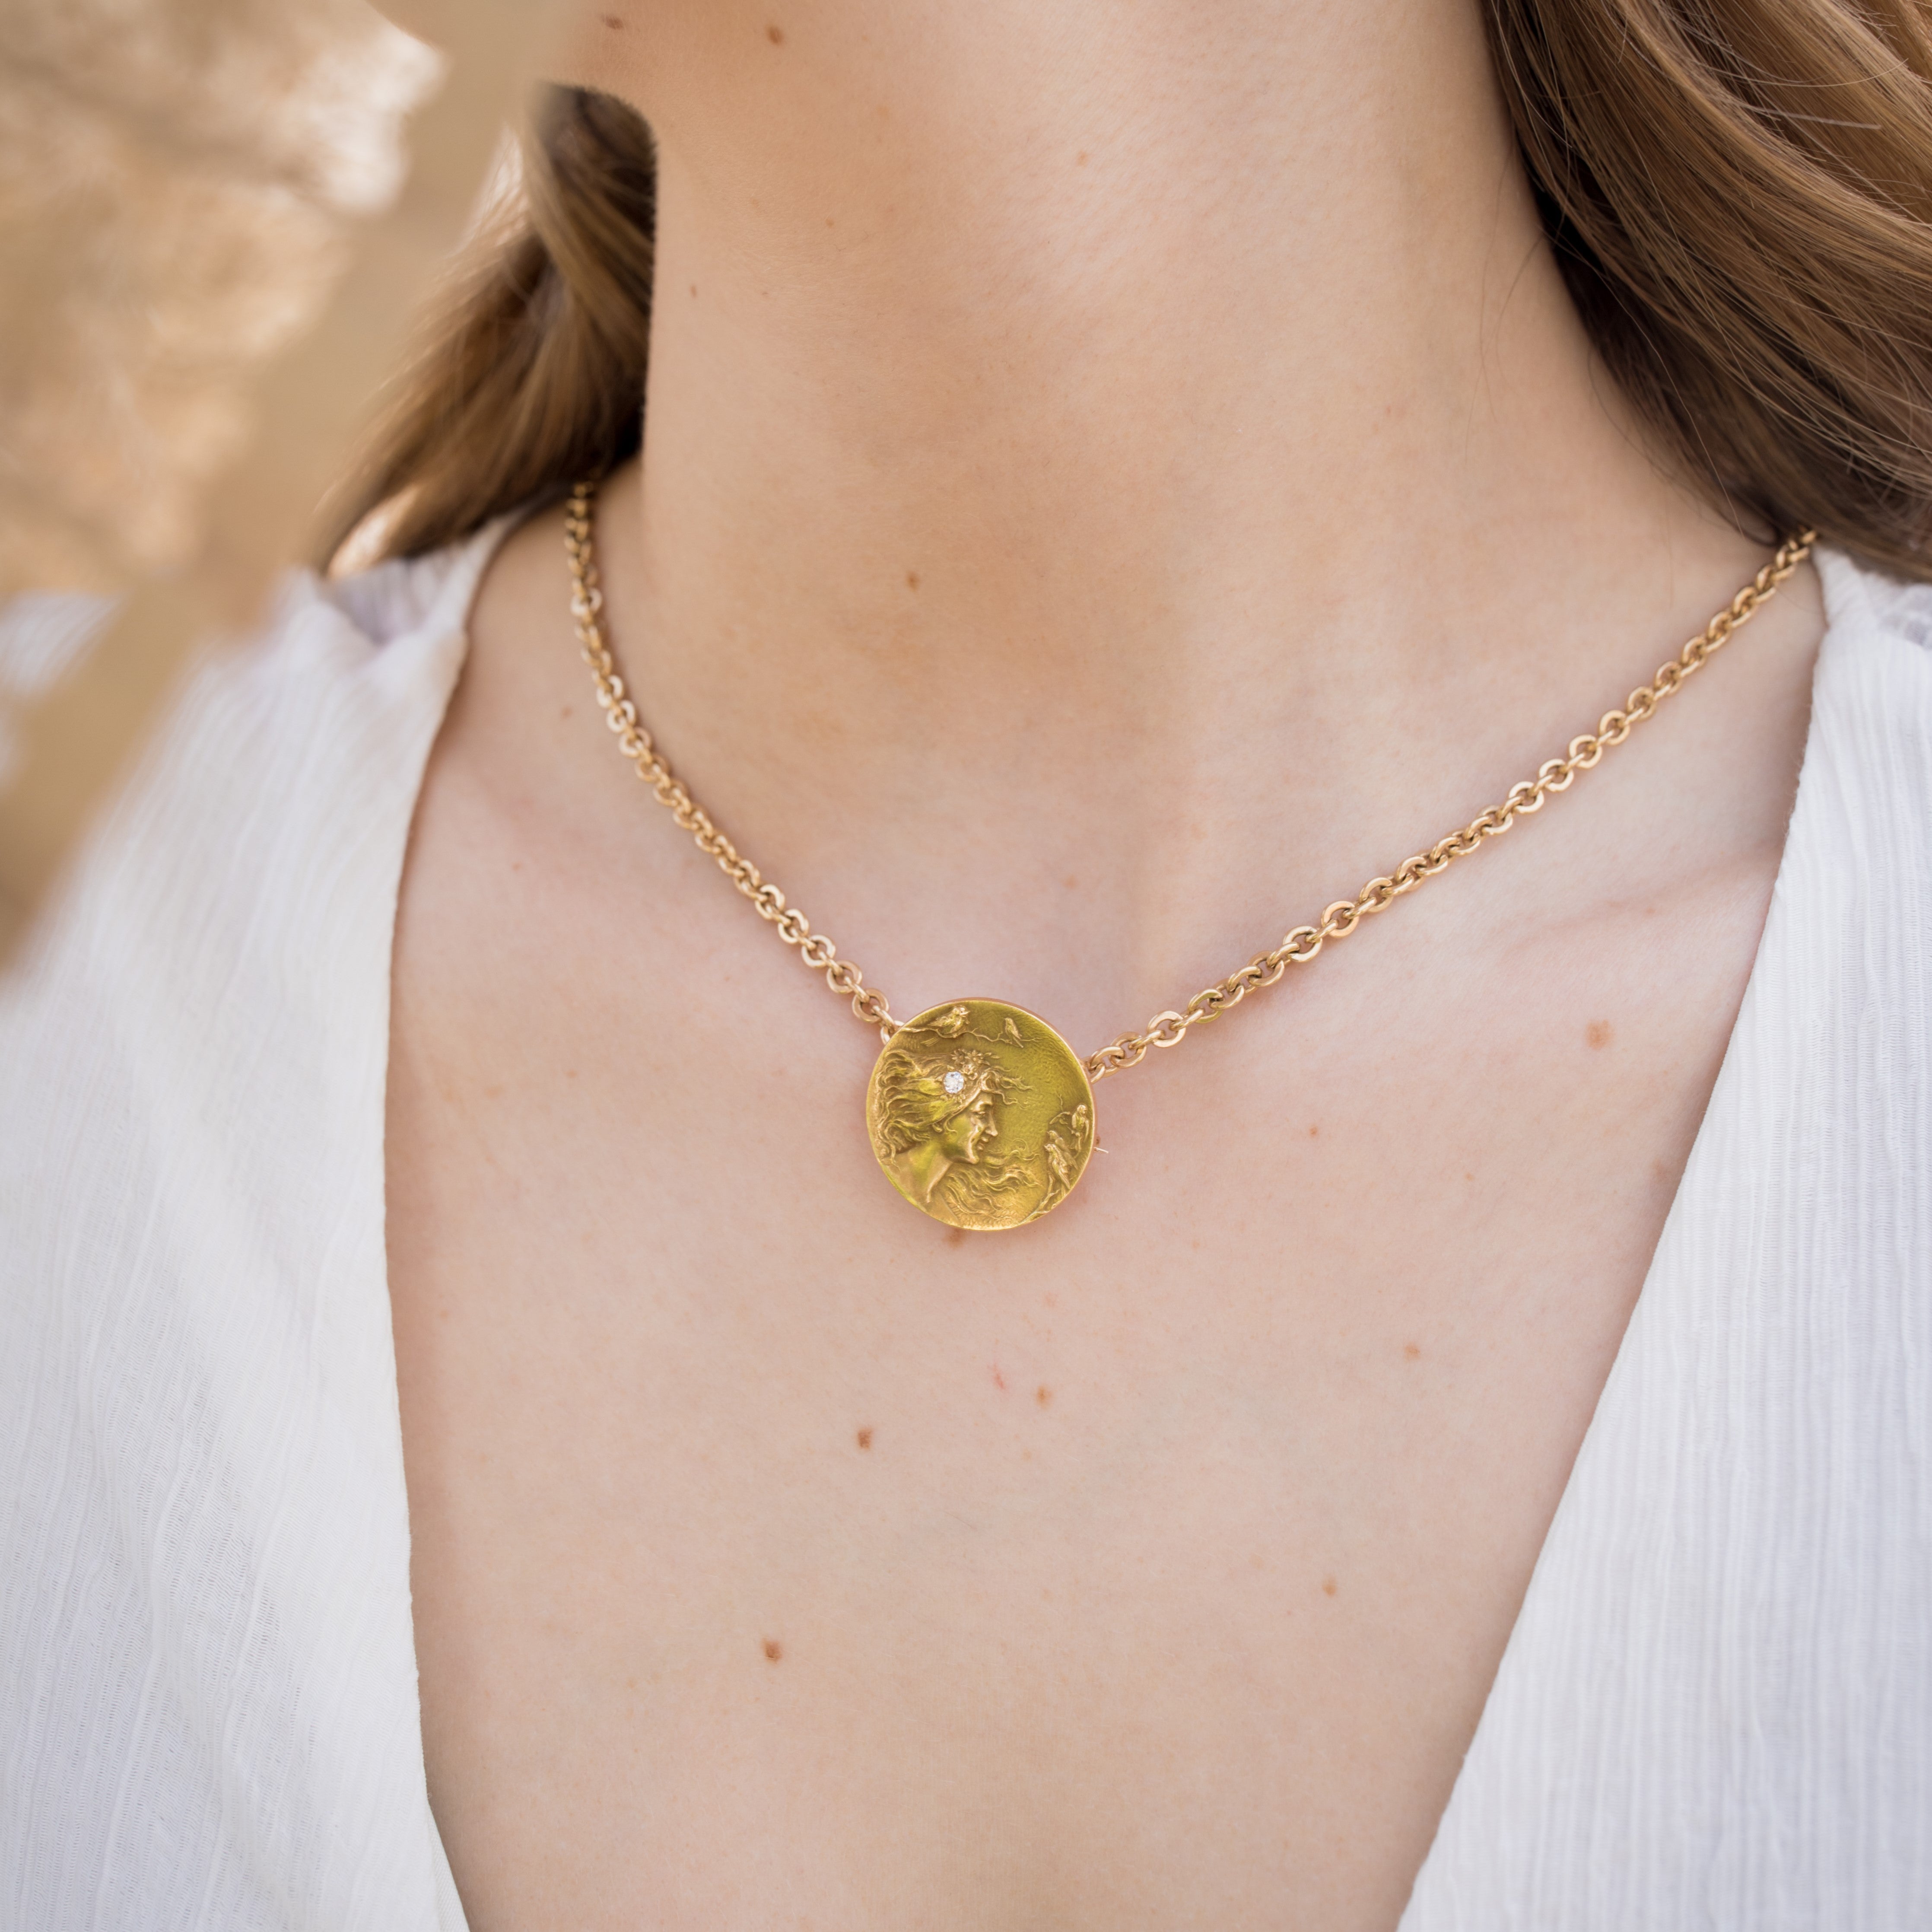 Art Nouveau pendant worn on a short chain around a woman’s neck.